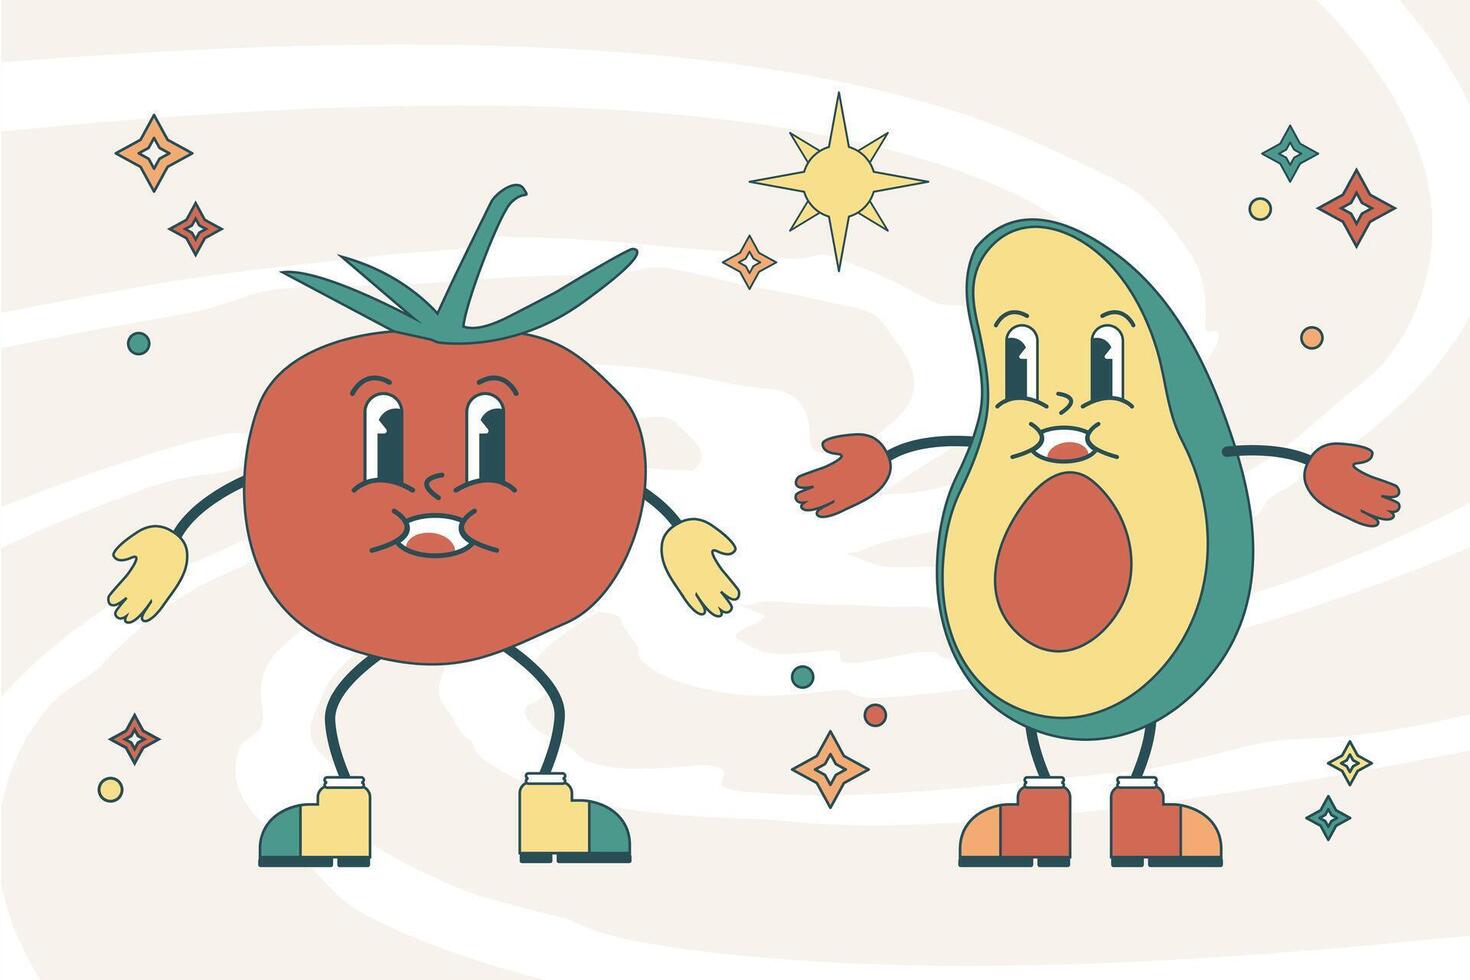 sensationnel mignonne illustration de tomate et Avocat personnages vecteur